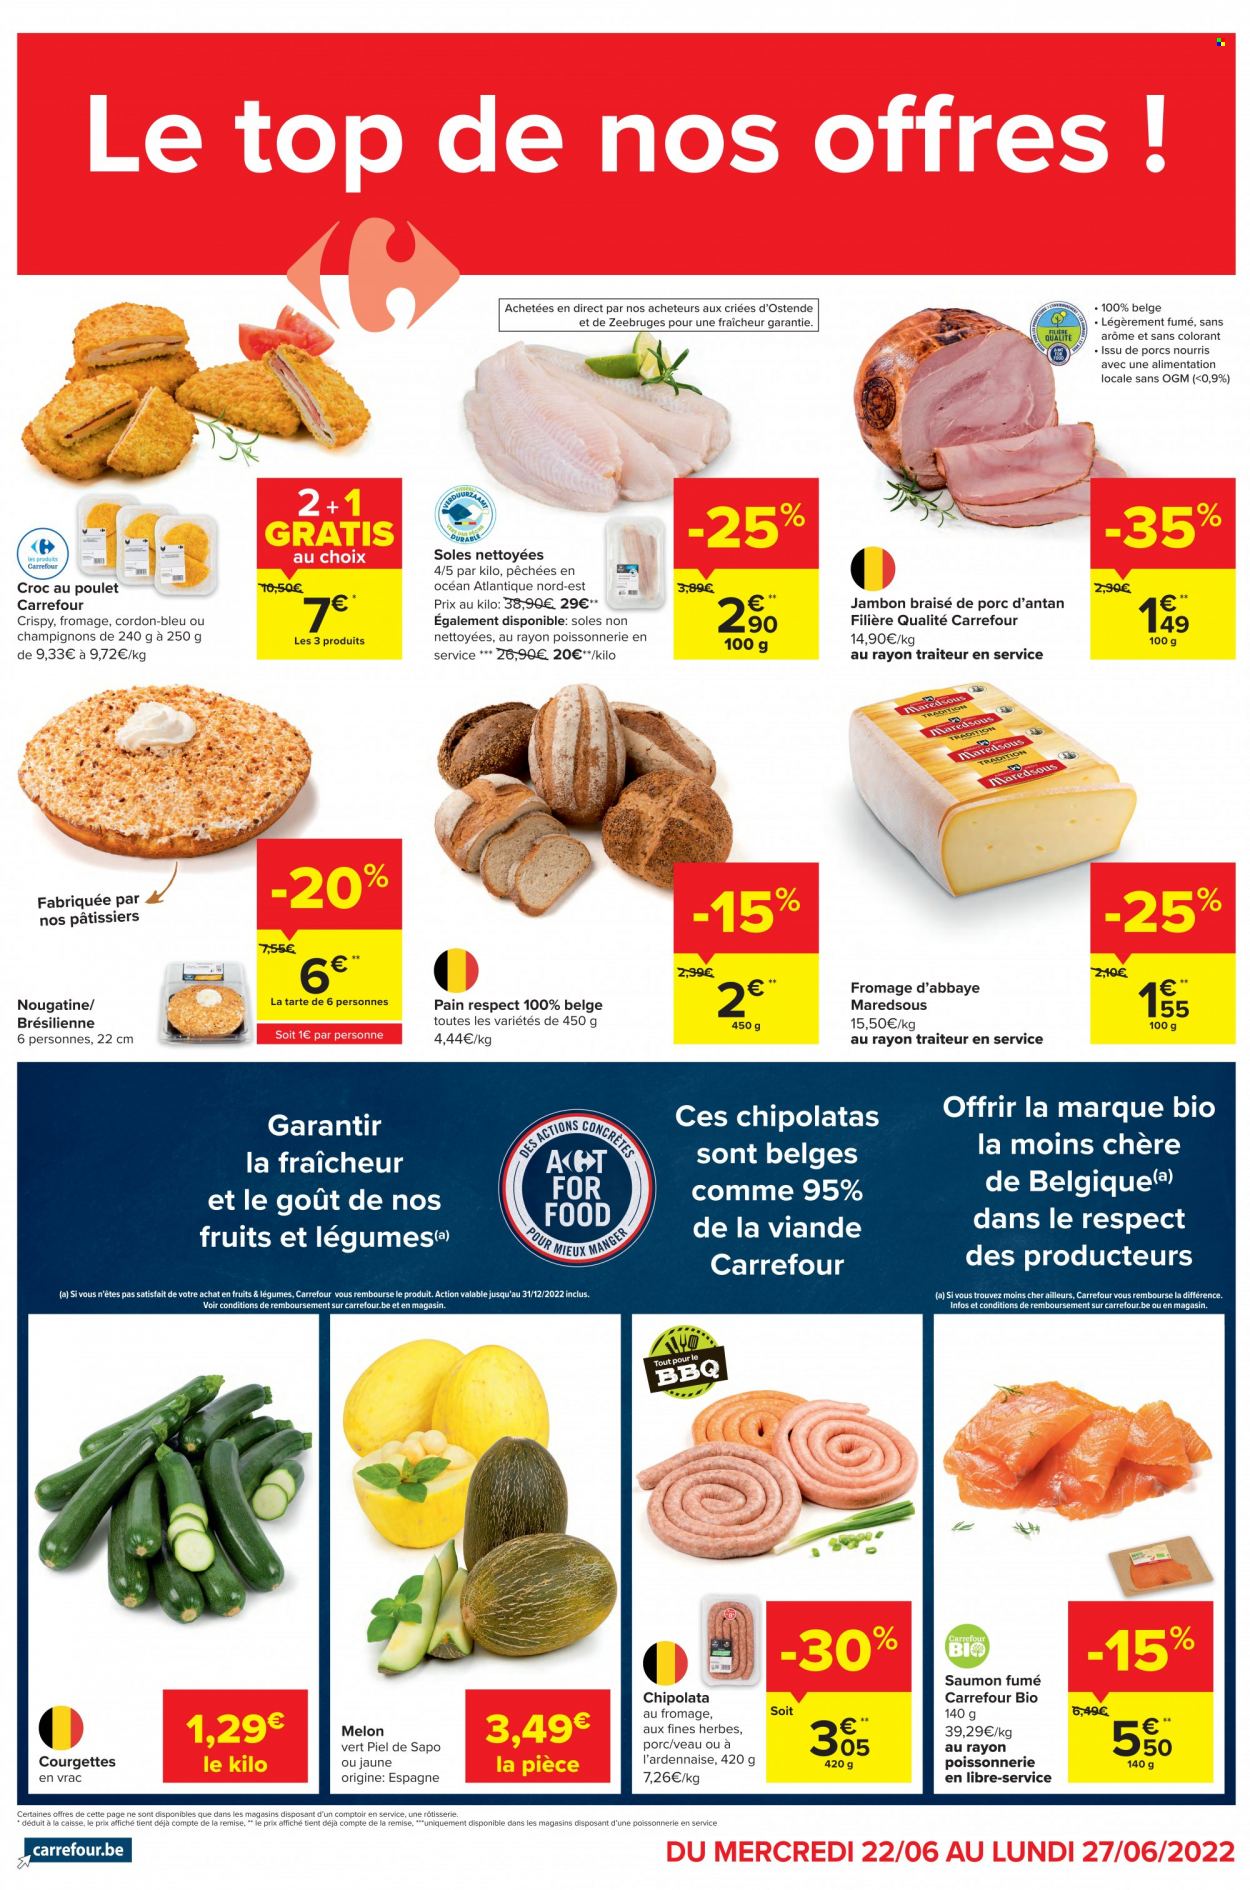 Carrefour-aanbieding - 22.6.2022 - 27.6.2022 -  producten in de aanbieding - champignons, Piel de Sapo meloen, chipolataworstjes, top. Pagina 1.